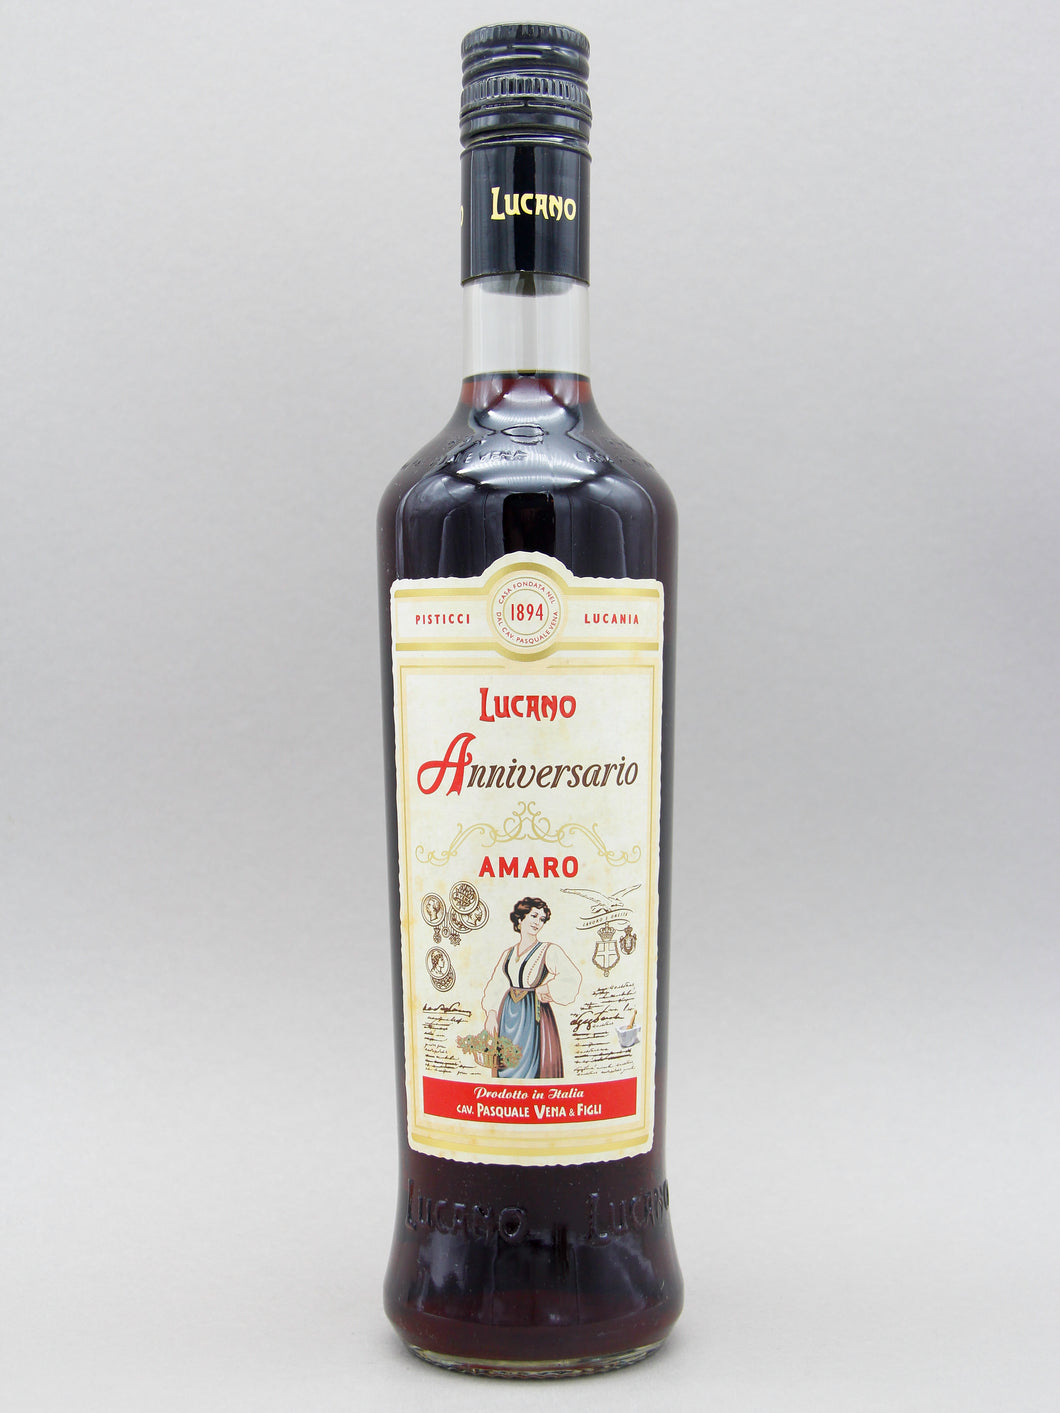 Lucano Anniversario, Amaro, Italy (34%, 50cl)